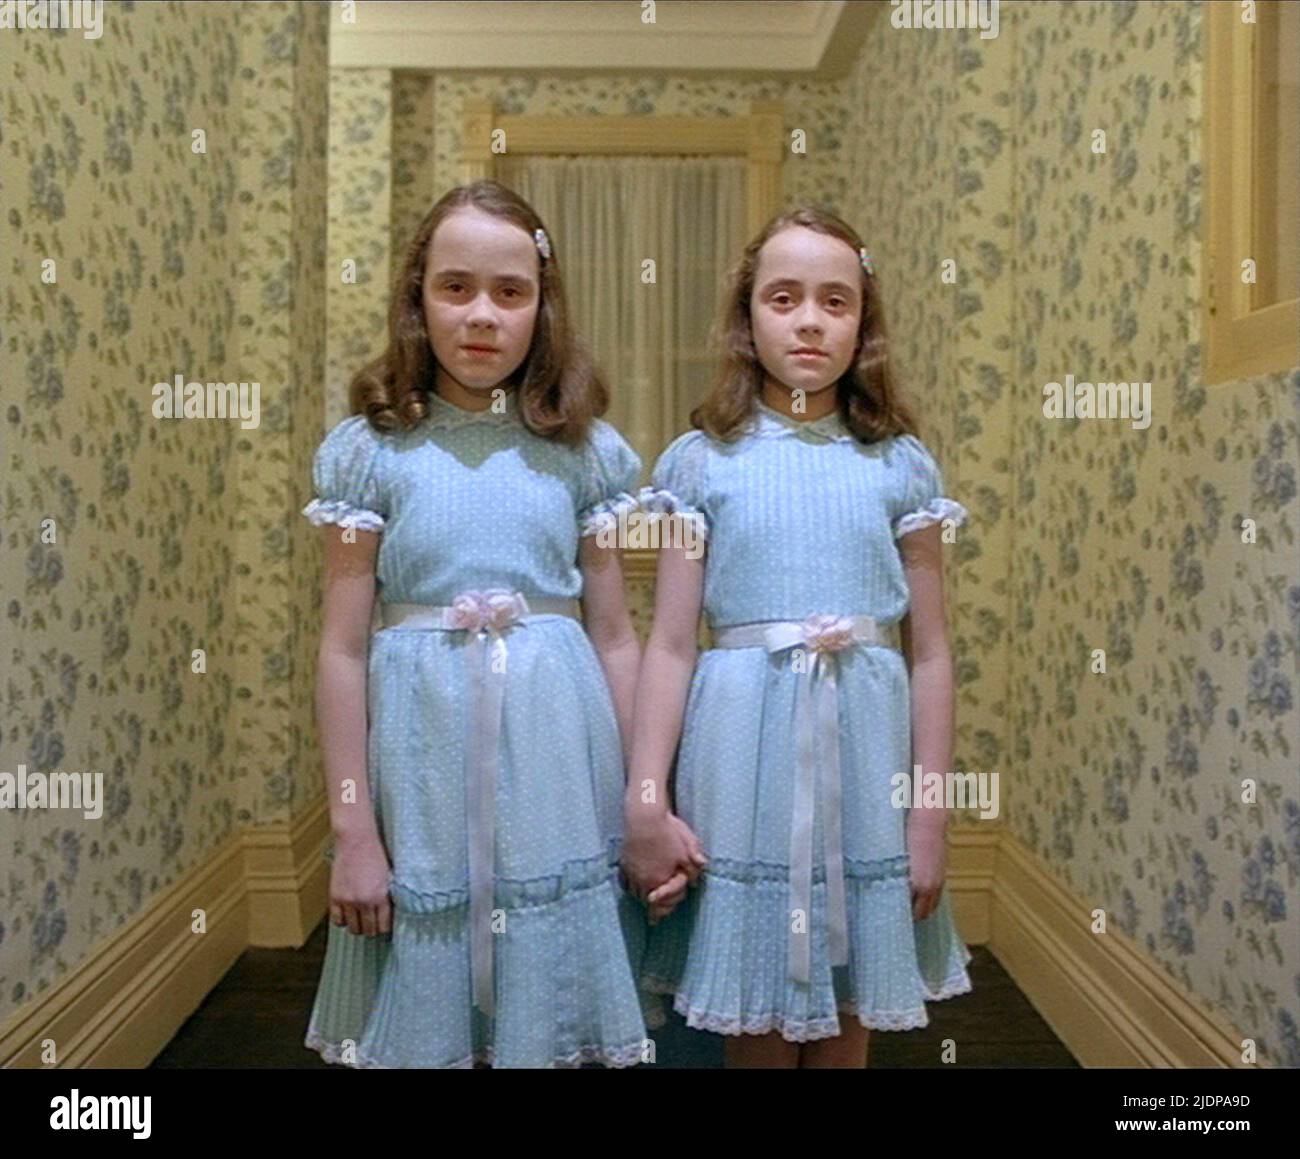 The shining twins immagini e fotografie stock ad alta risoluzione - Alamy